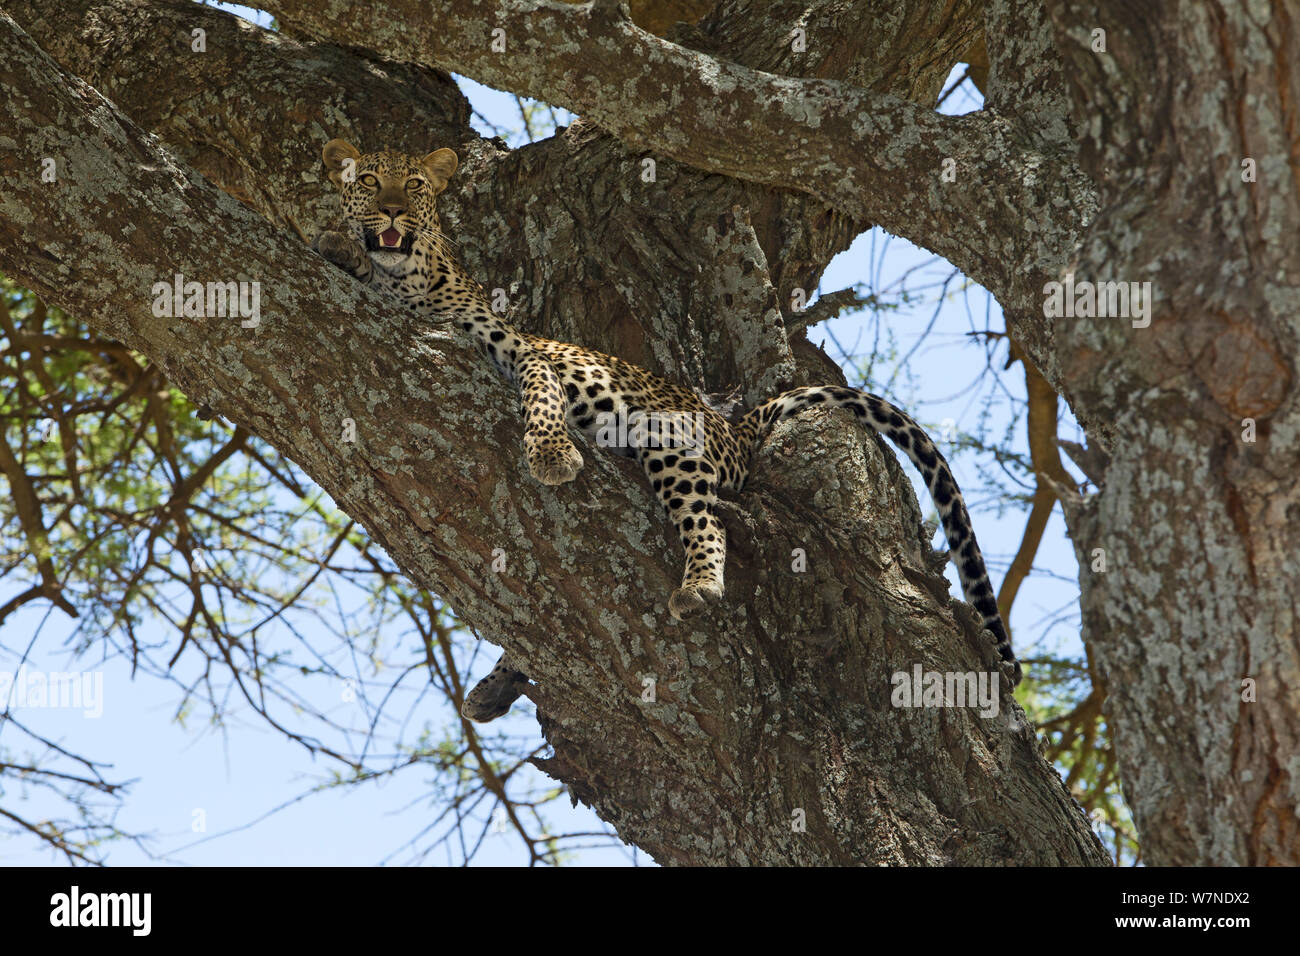 Leopard (Panthera pardus) alta in una struttura ad albero in modo che abbia un ottimo punto panoramico per la potenziale preda. Esso inoltre si arrampica su alberi per evitare gli insetti, prendere un po' di brezza e scappare dai suoi nemici. Parco Nazionale del Serengeti, Tanzania Foto Stock